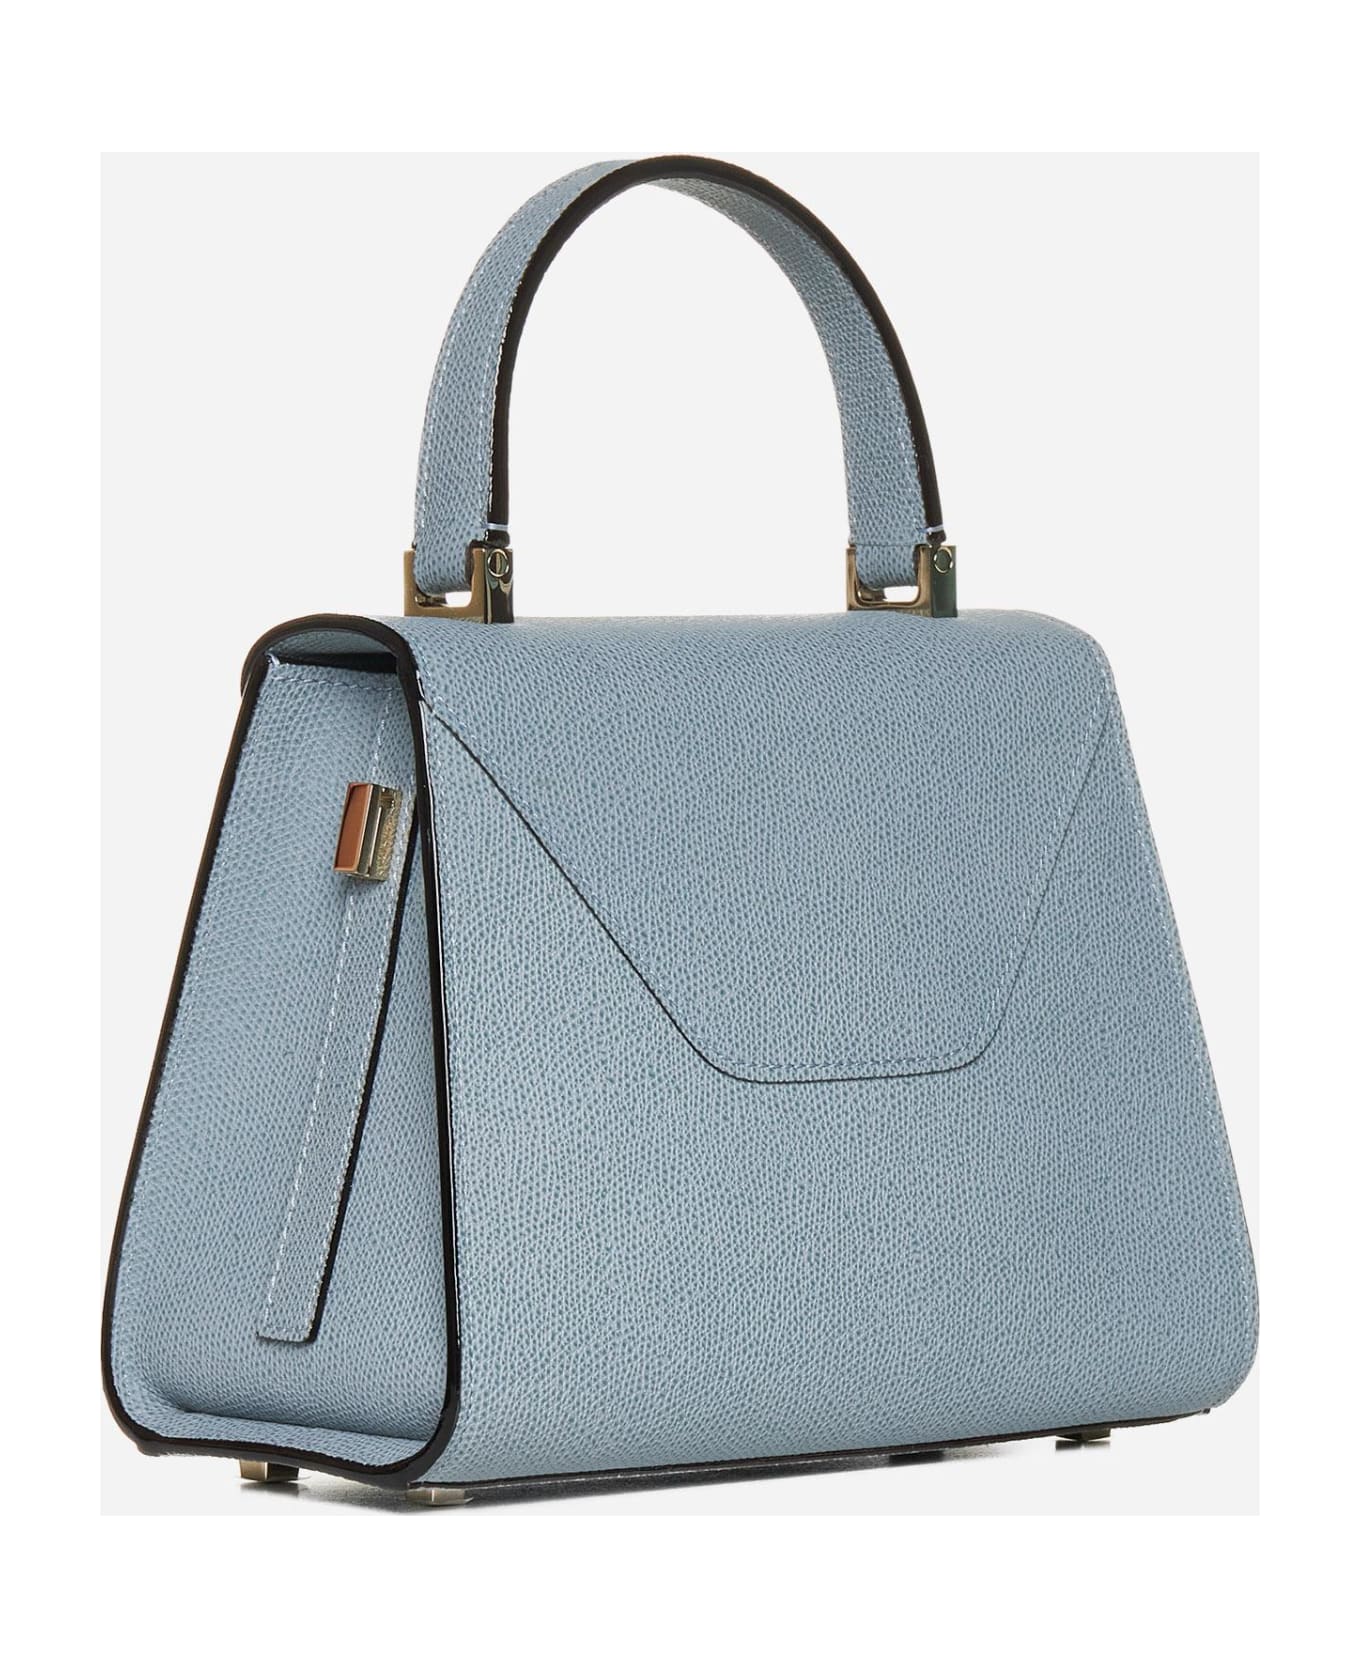 Valextra Iside Mini Leather Bag | italist